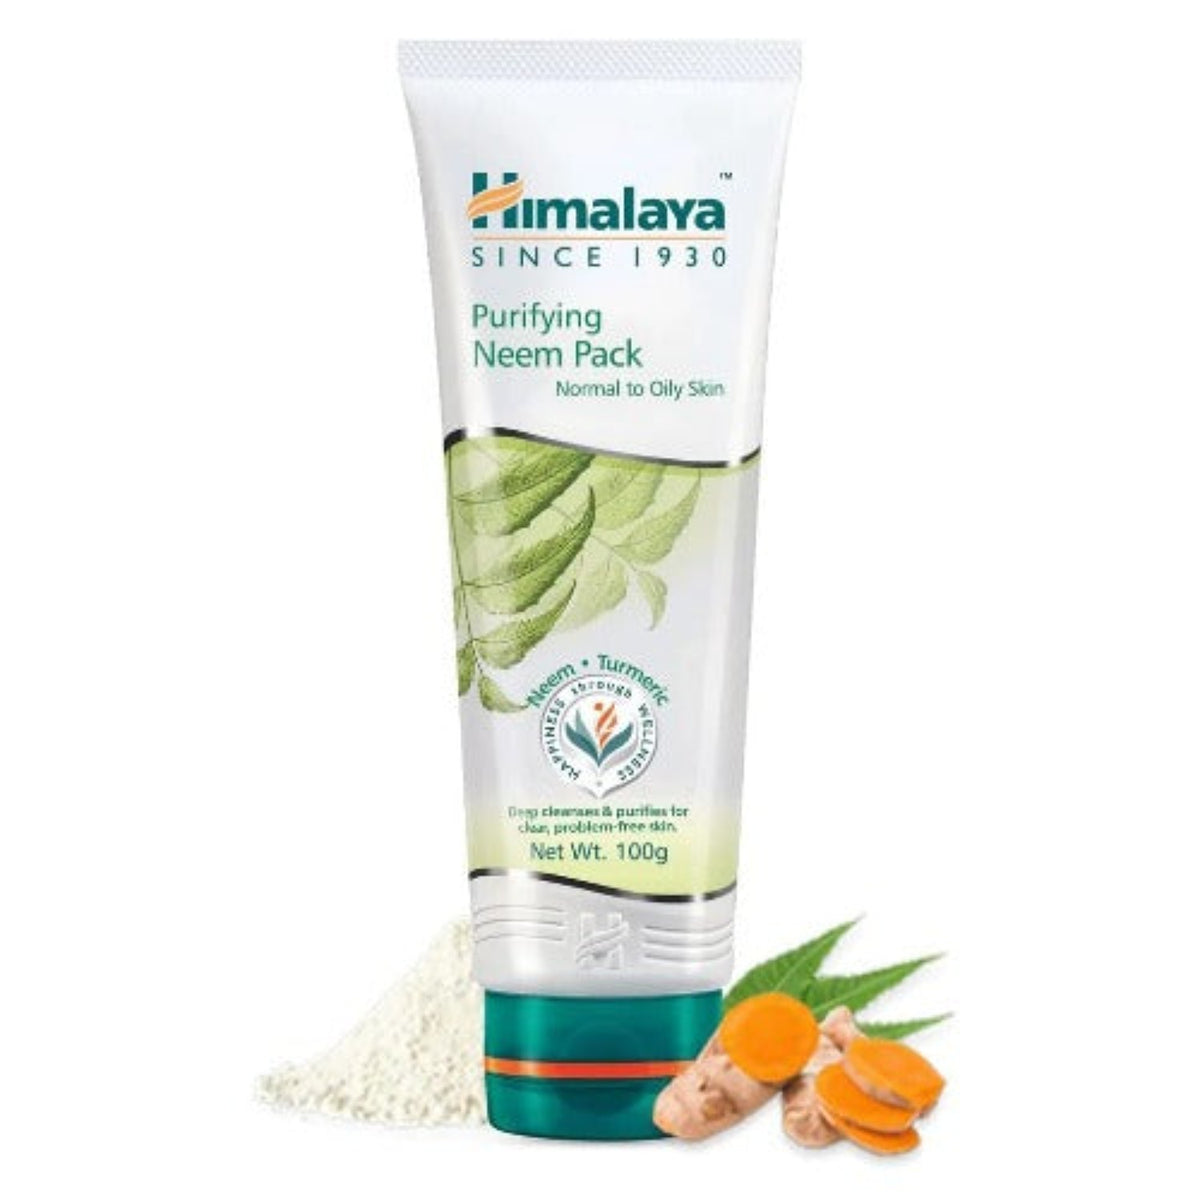 Himalaya Herbal Ayurvedic Personal Care Purifying Neem Глубоко очищает и очищает кожу для чистой и беспроблемной кожи